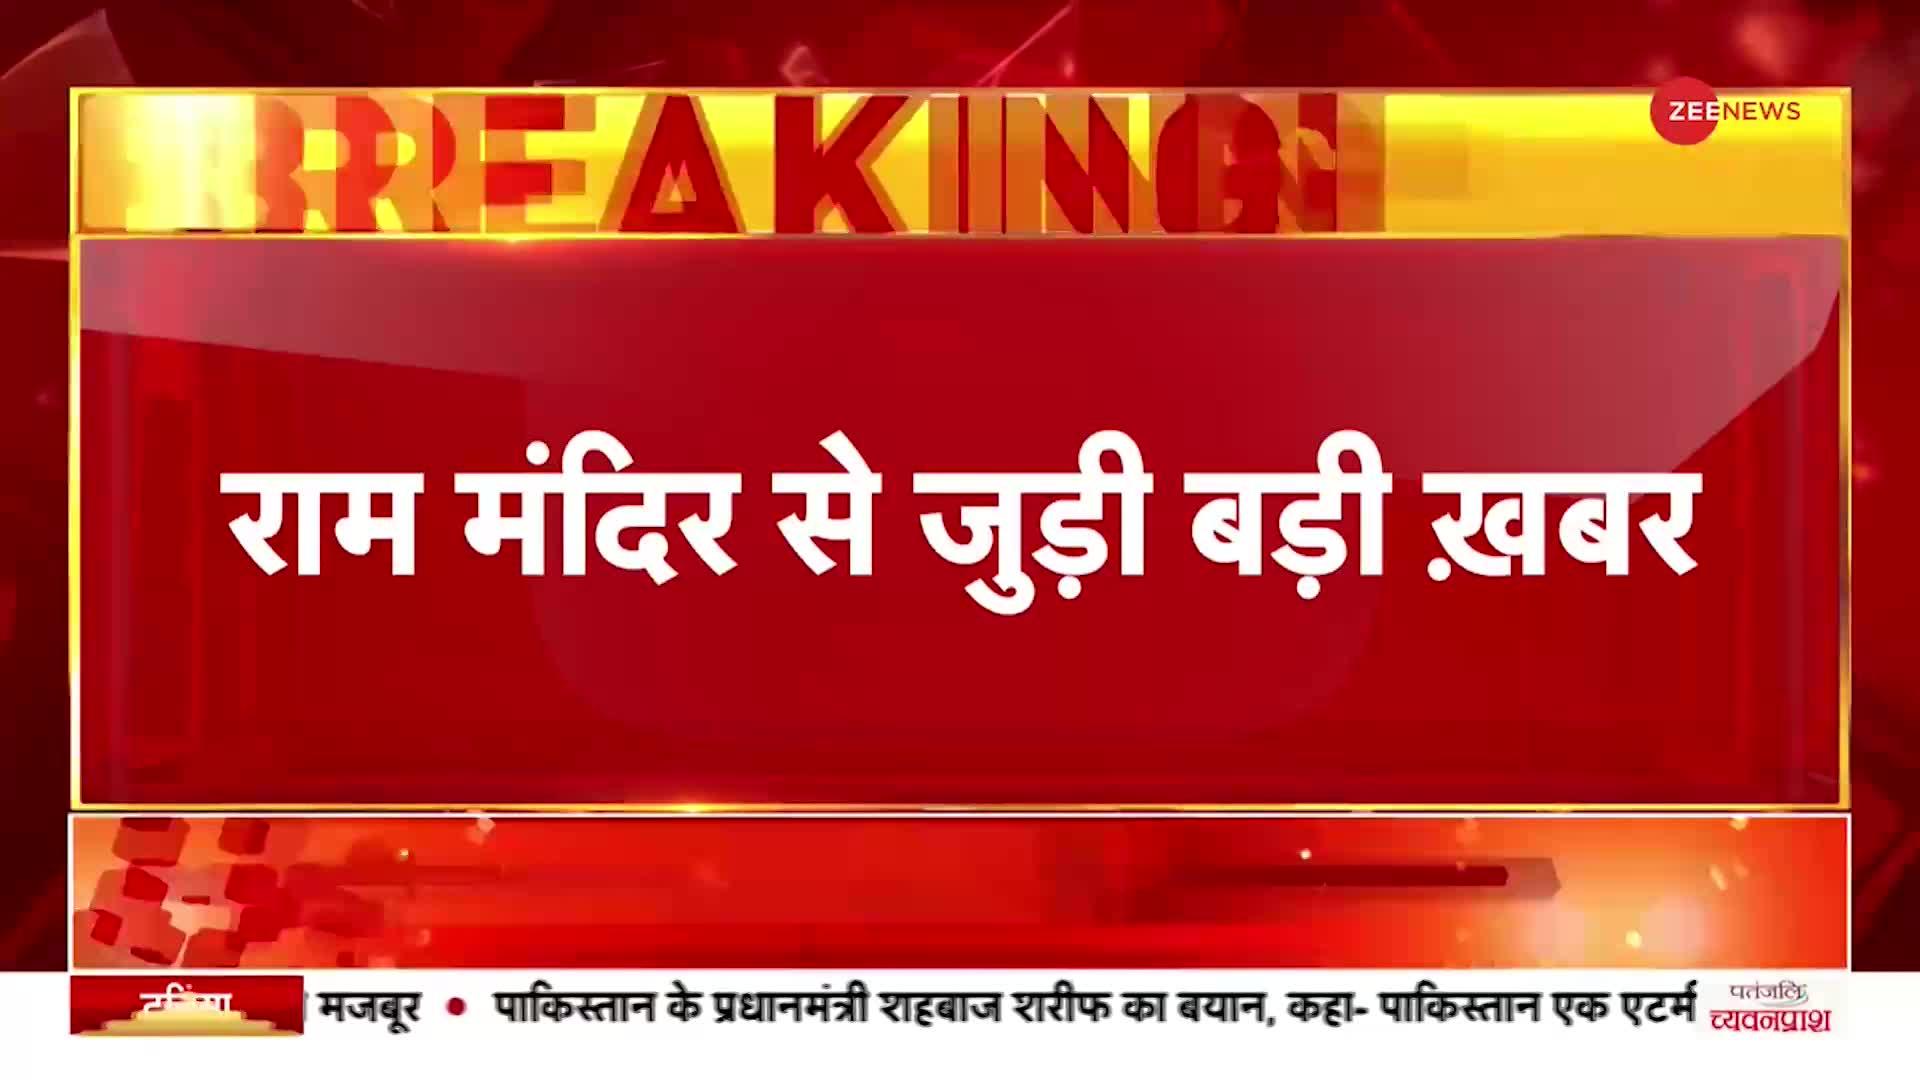 Ayodhya: राम मंदिर पर आतंकियों की बड़े हमले की साजिश, खुफिया एजेंसियों ने जारी किया अलर्ट |Hindi News